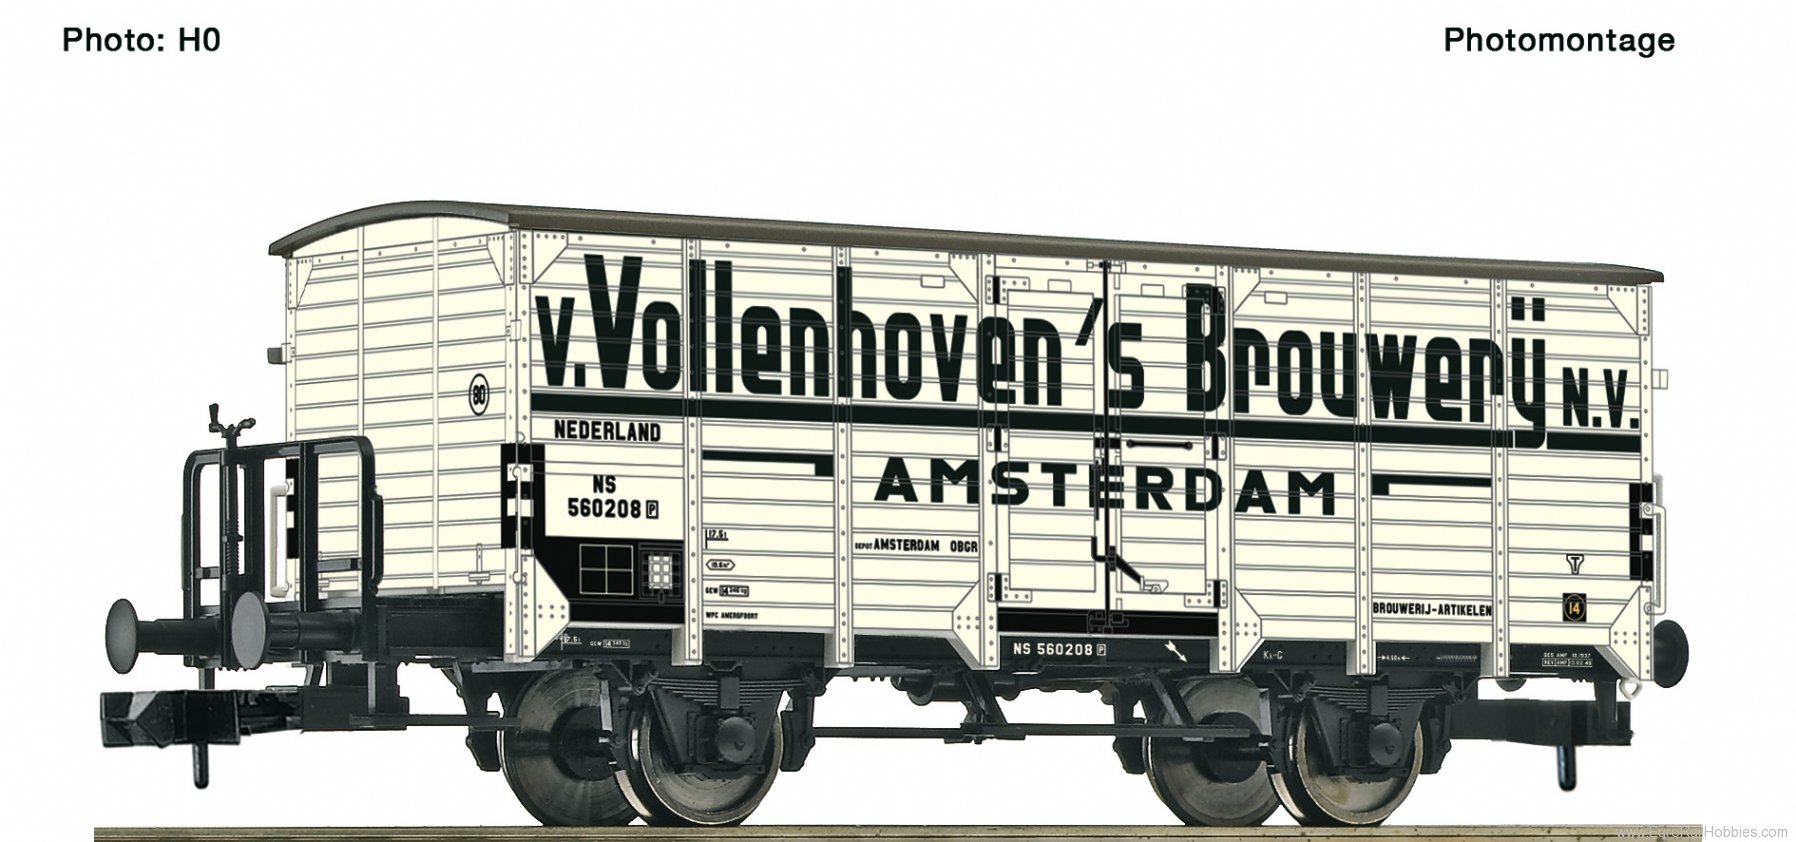 Fleischmann 834802 NS Refrigerated wagons of the brewery Van Vol